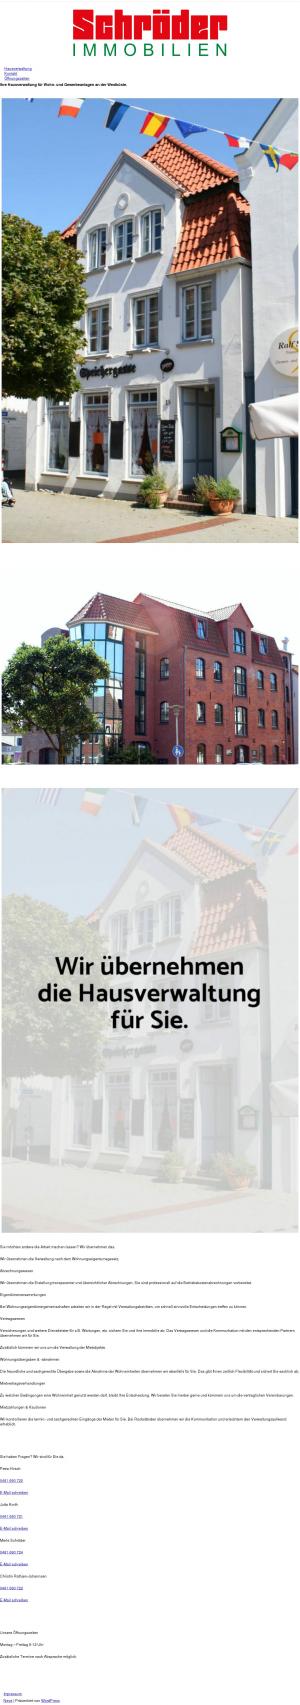 www.schroeder-immobilien-heide.de